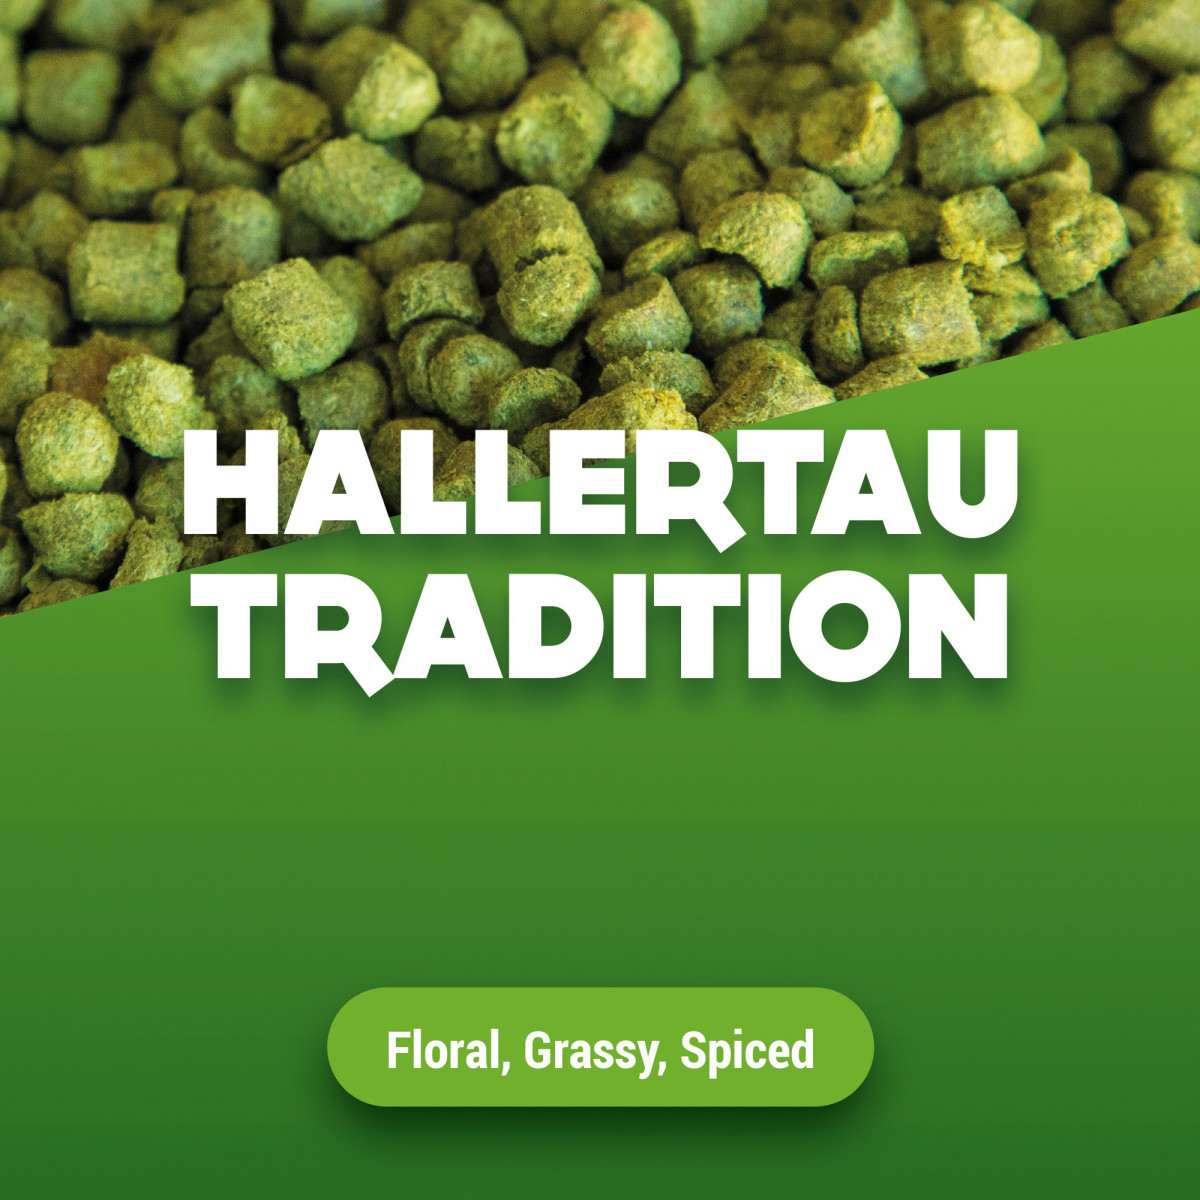 Hopfenpellets Hallertau Tradition 2023 5 kg